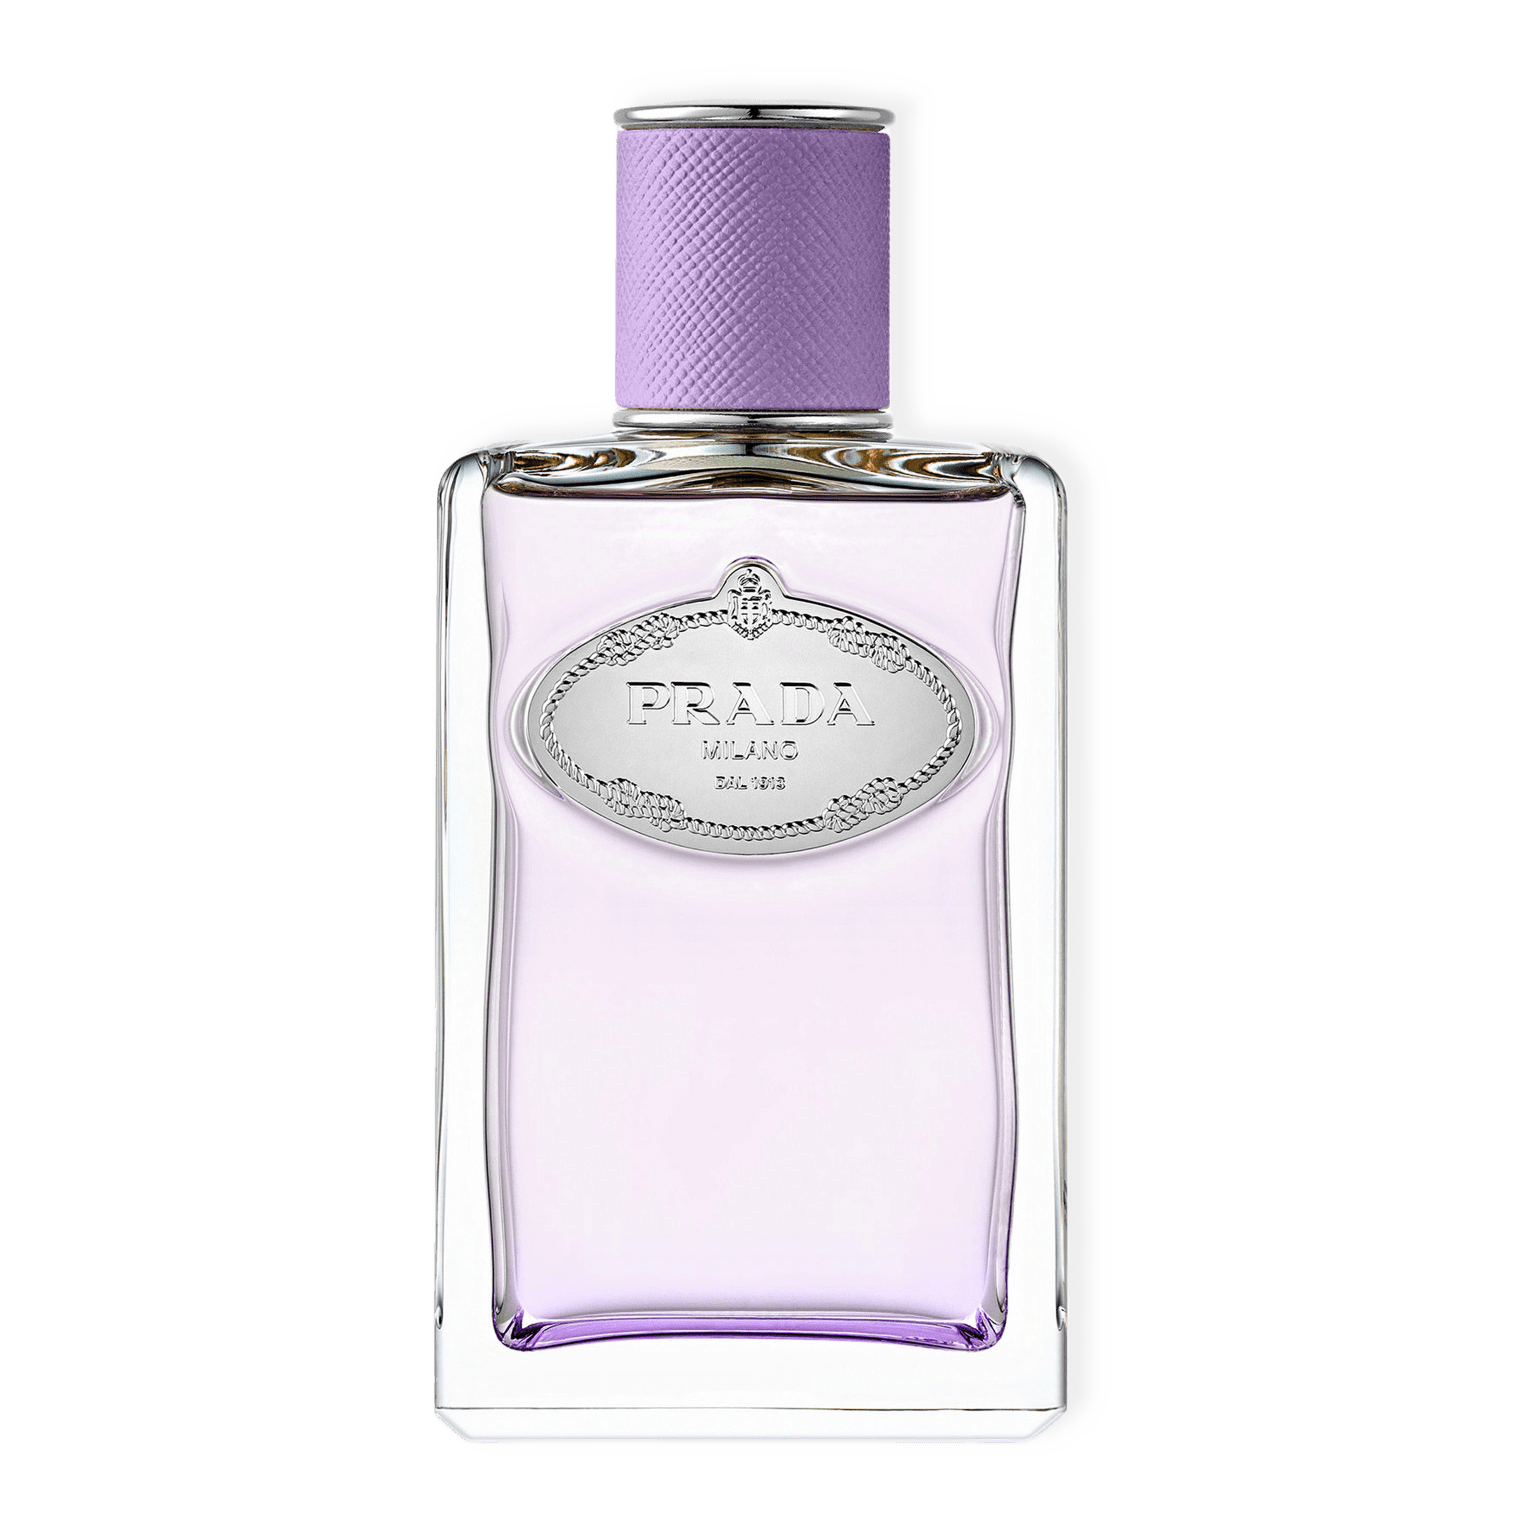 Infusion de Figue Eau de Parfum från Prada